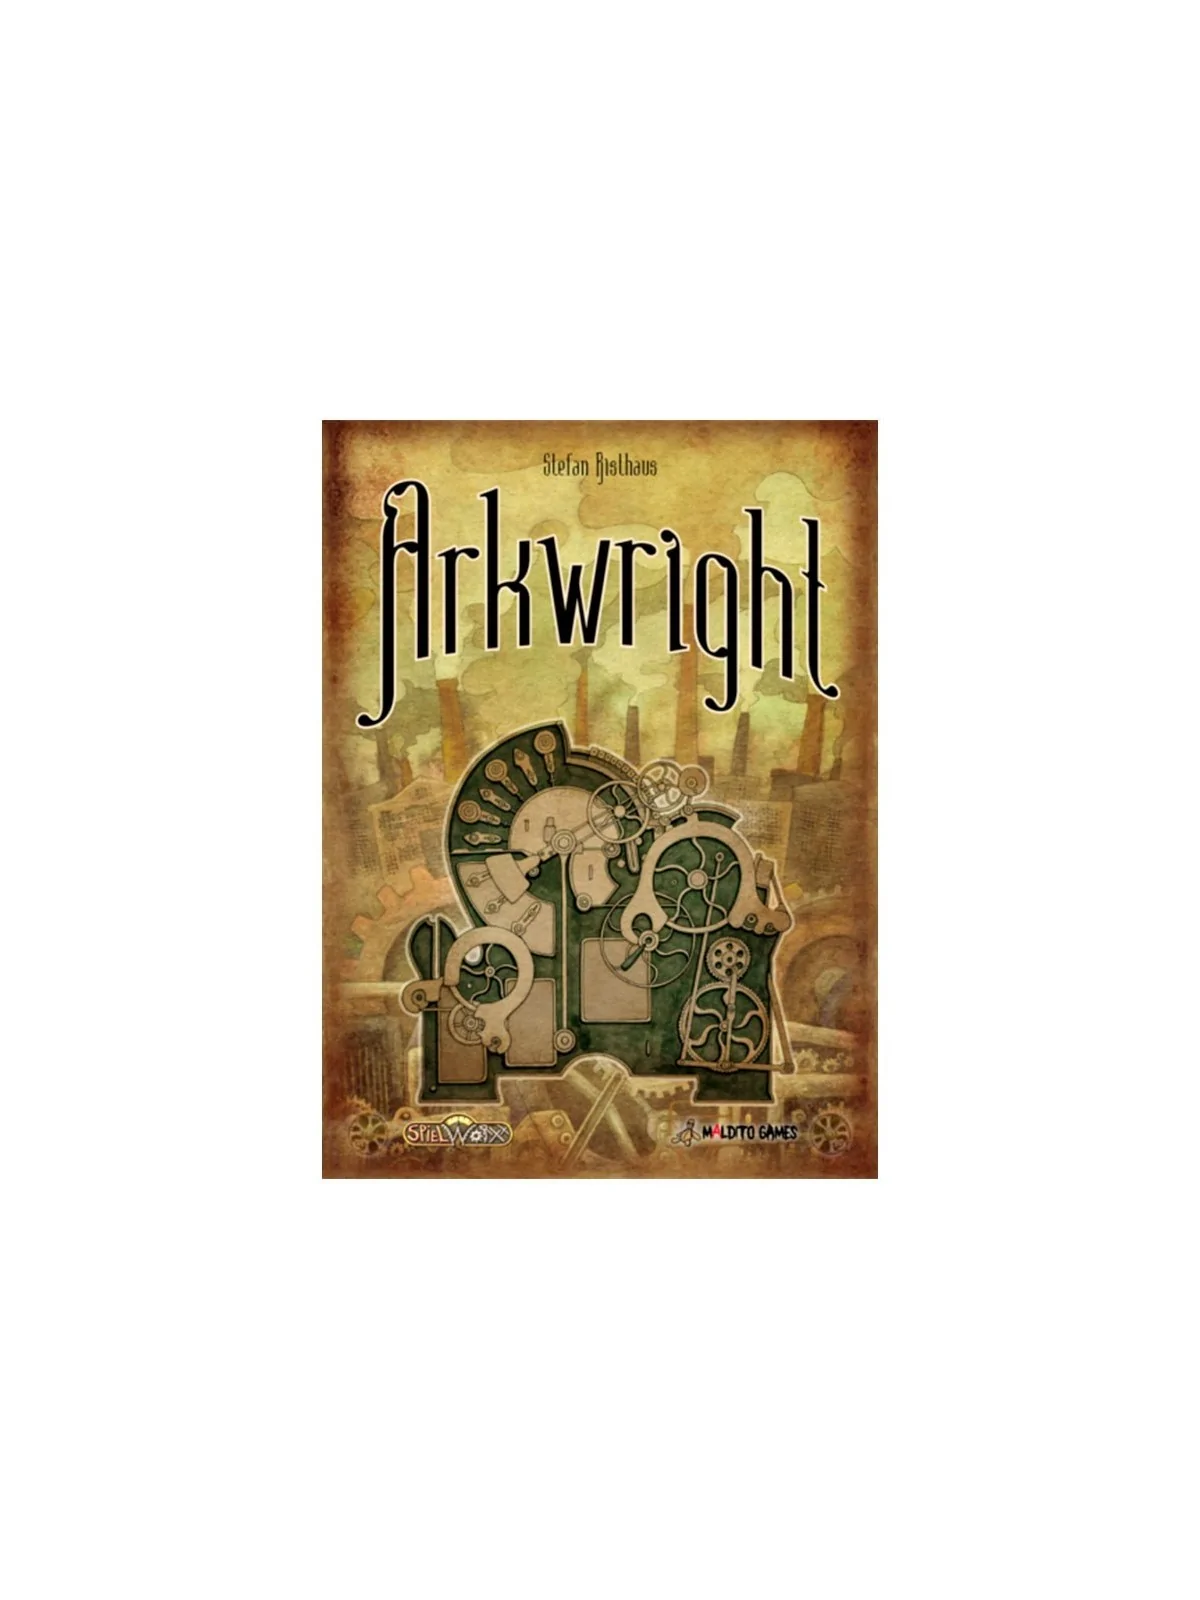 Comprar Arkwright barato al mejor precio 72,00 € de Maldito Games